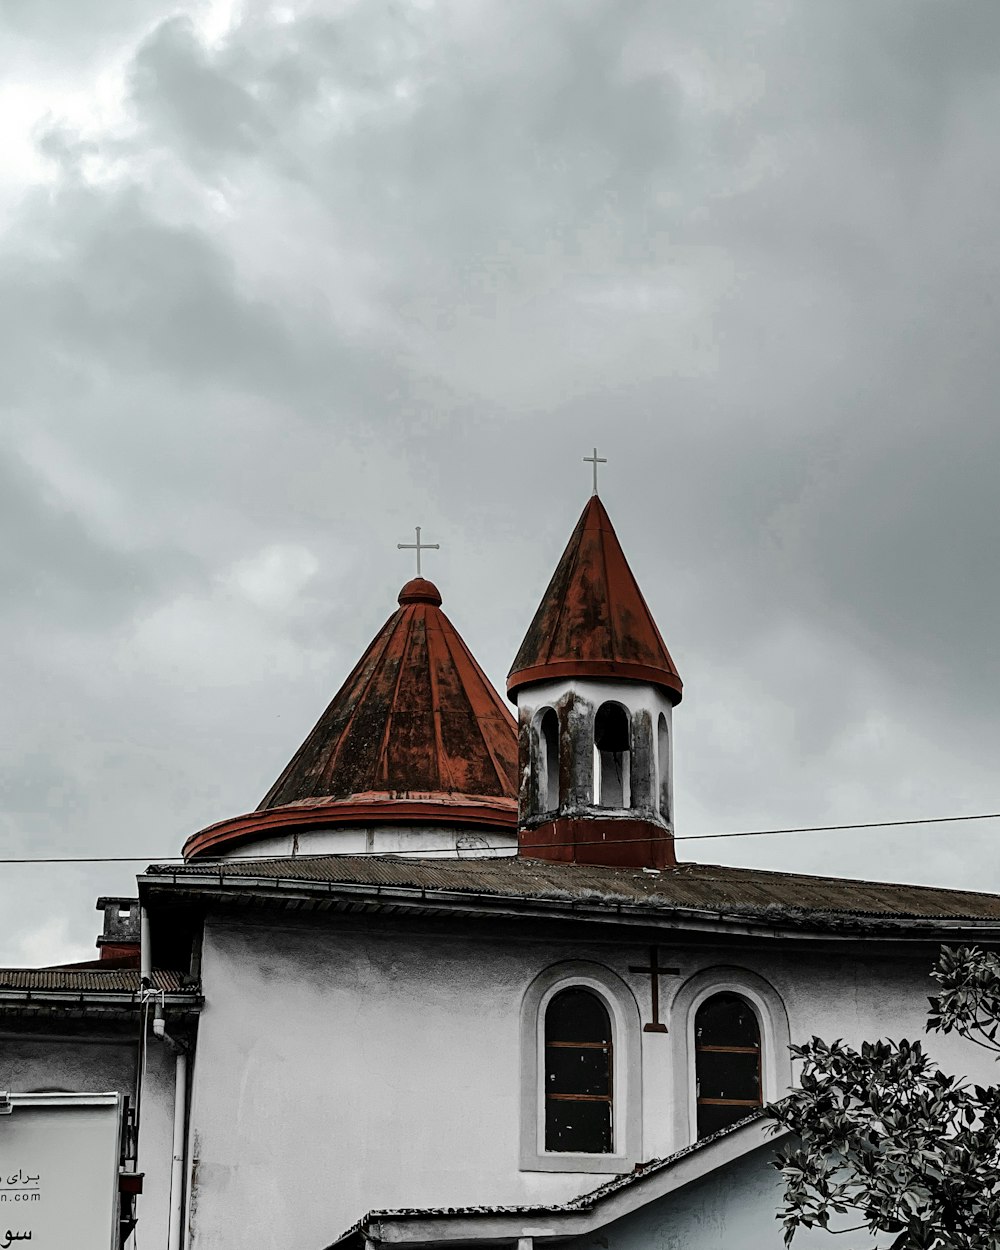 빨간 지붕과 시계탑이있는 흰색 건물